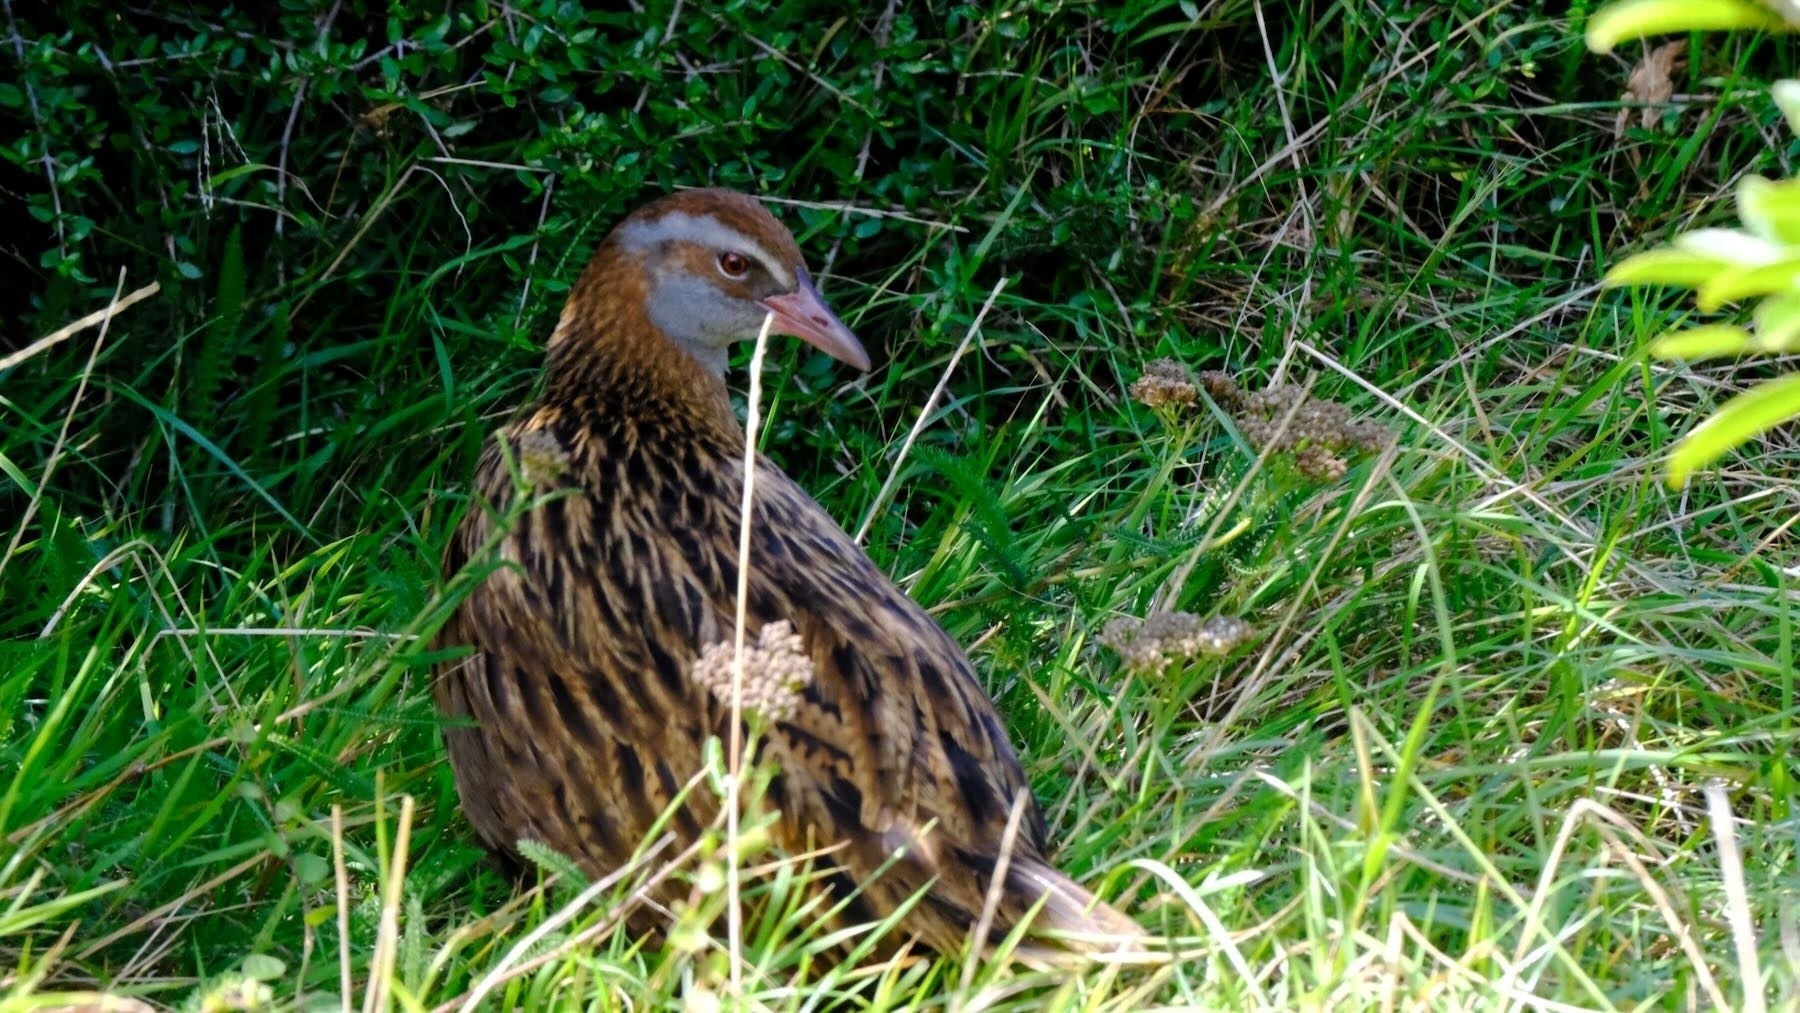 Medium size brown stripy bird on the ground.